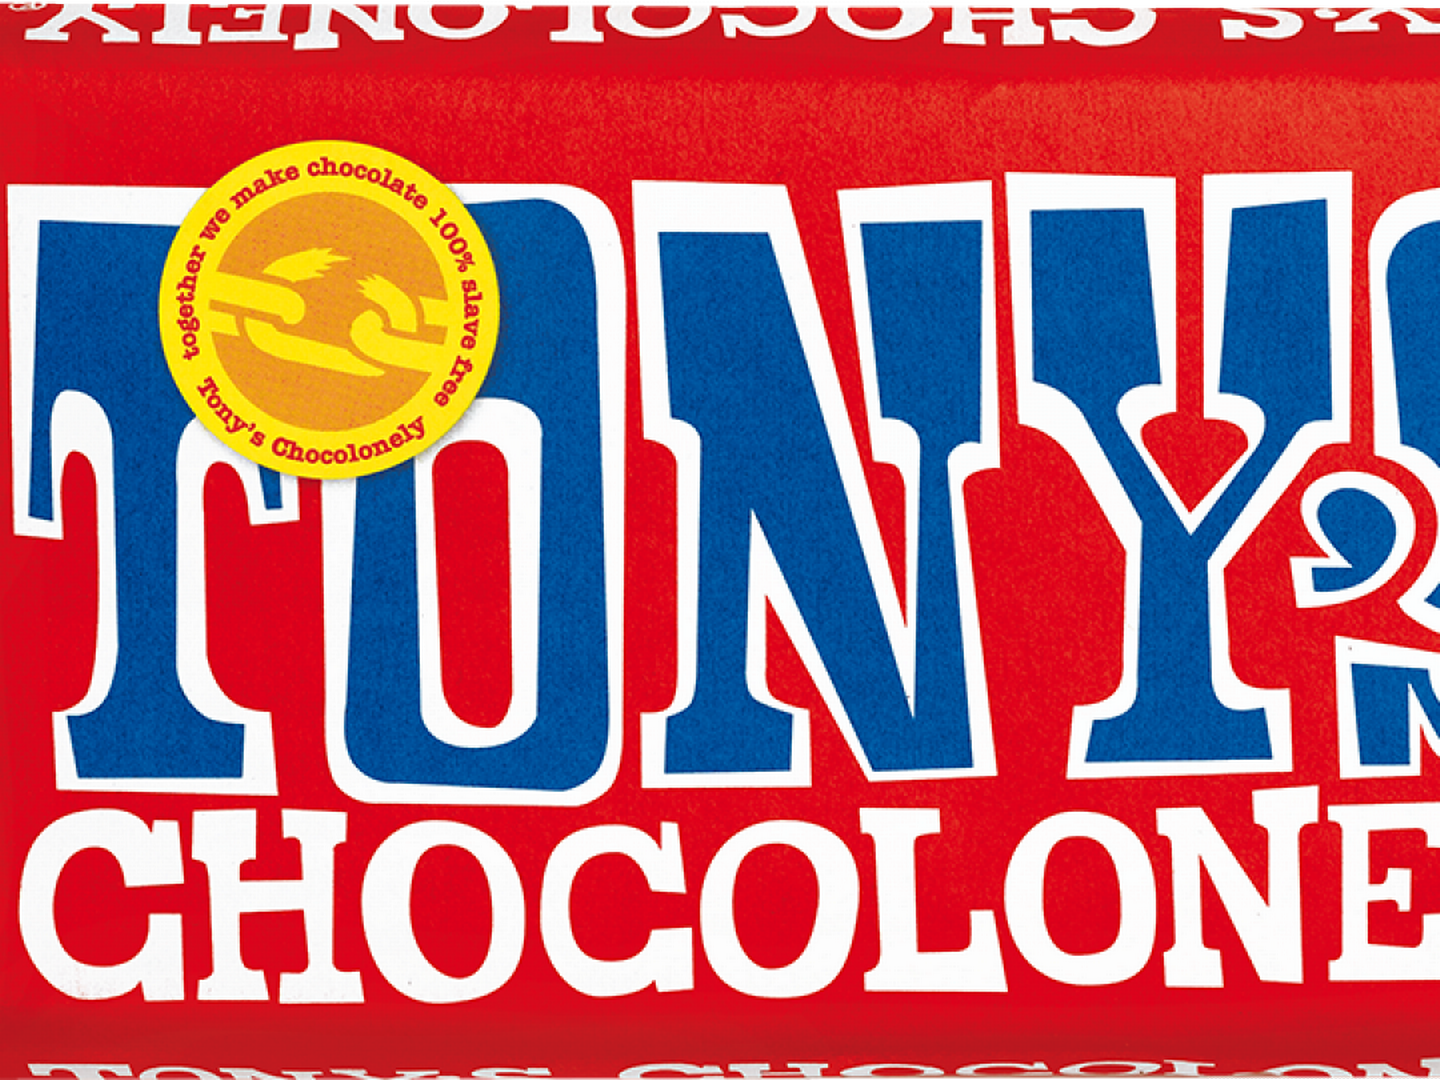 Den nederlandske sjokoladeprodusenten Tony’s Chocolonely omsatte for nesten 1,7 milliarder norske kroner i fjor. | Foto: Produsenten